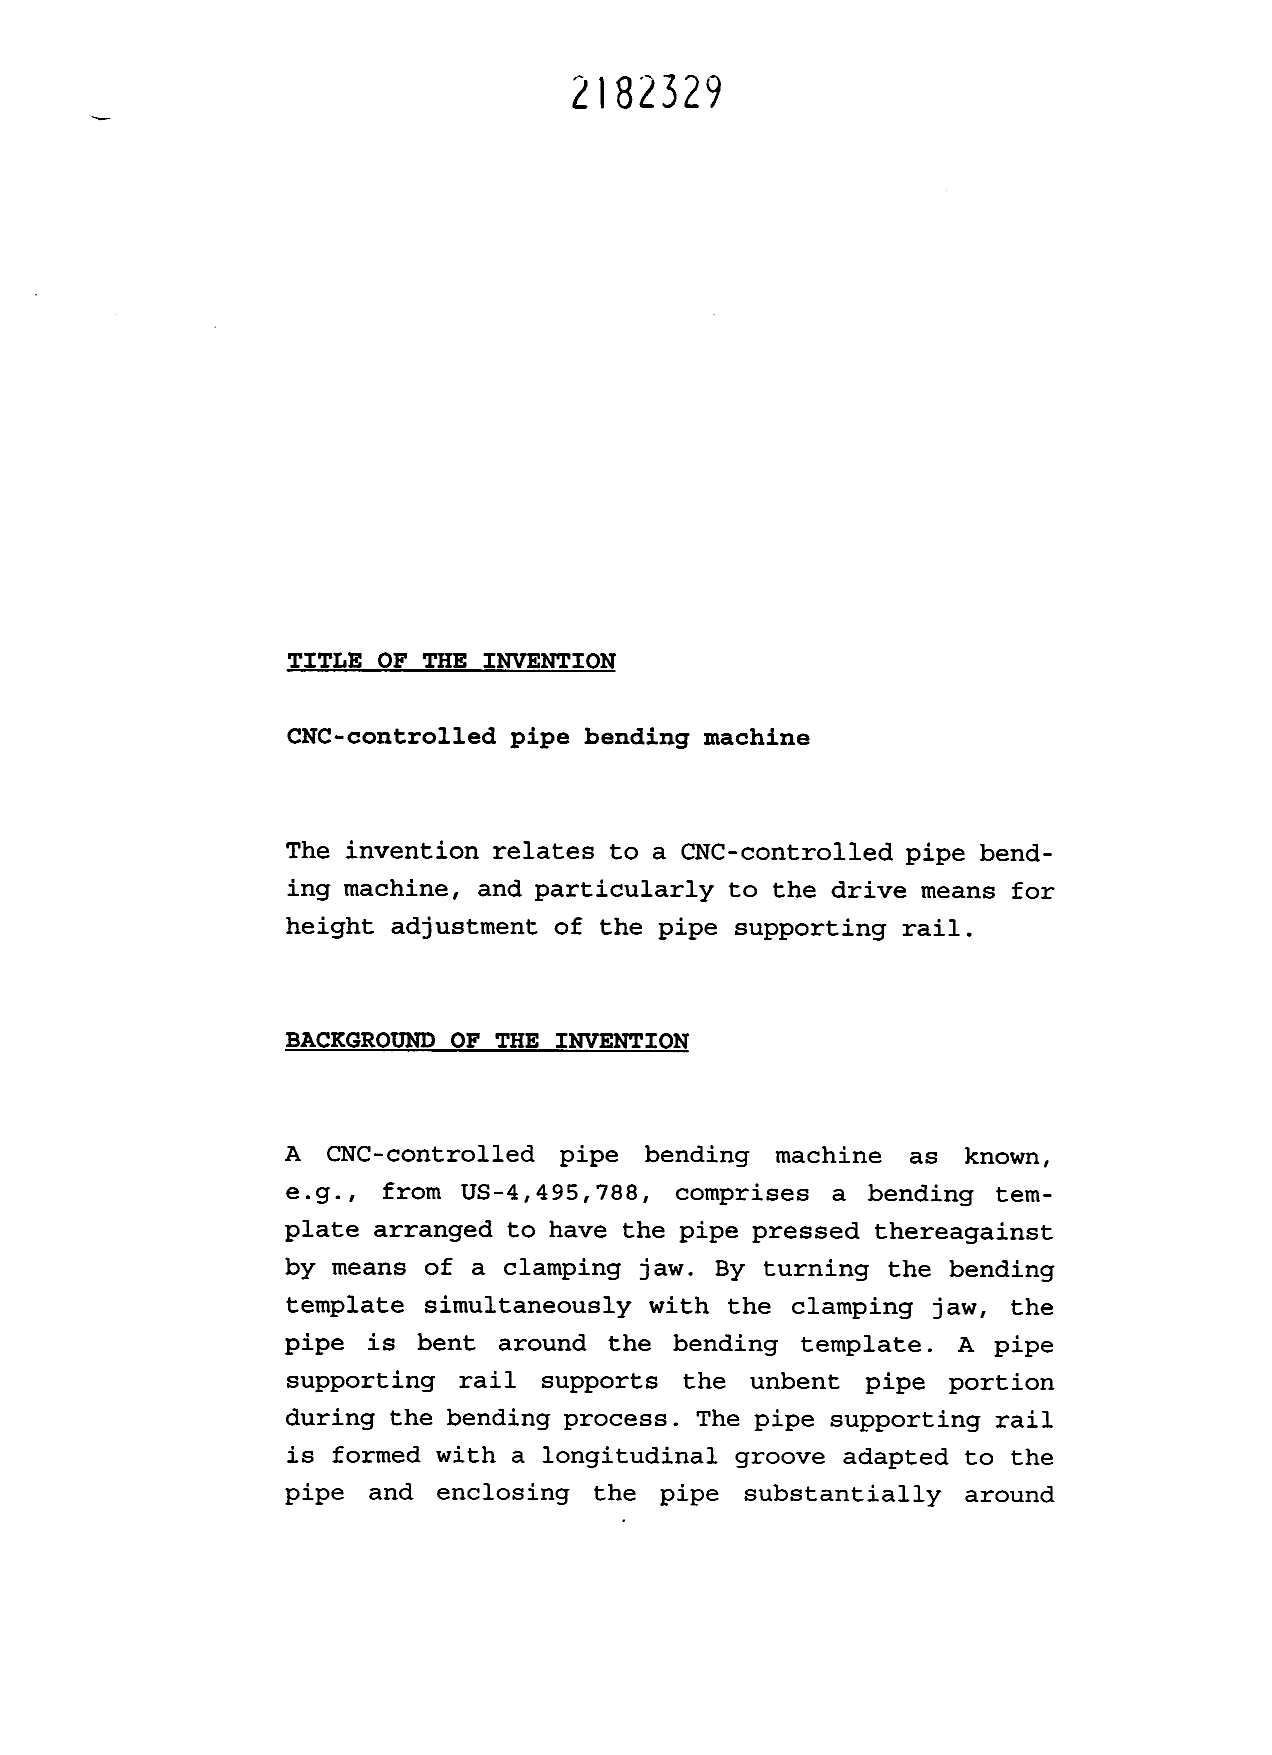 Canadian Patent Document 2182329. Description 19960730. Image 1 of 9